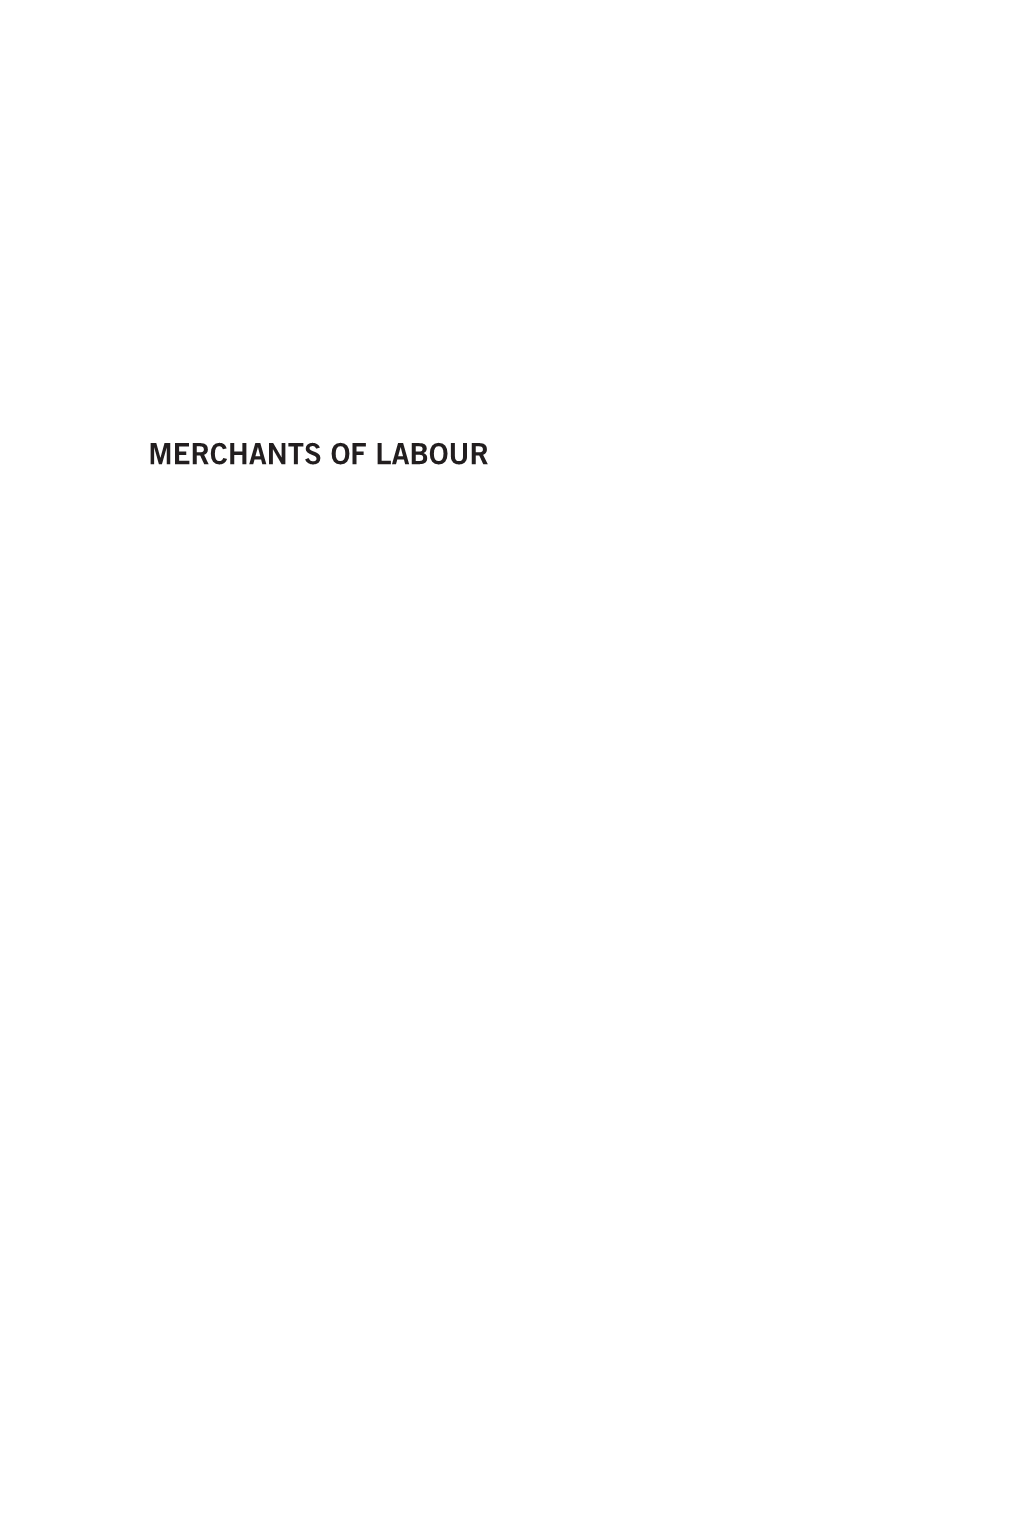 Merchants of Labour